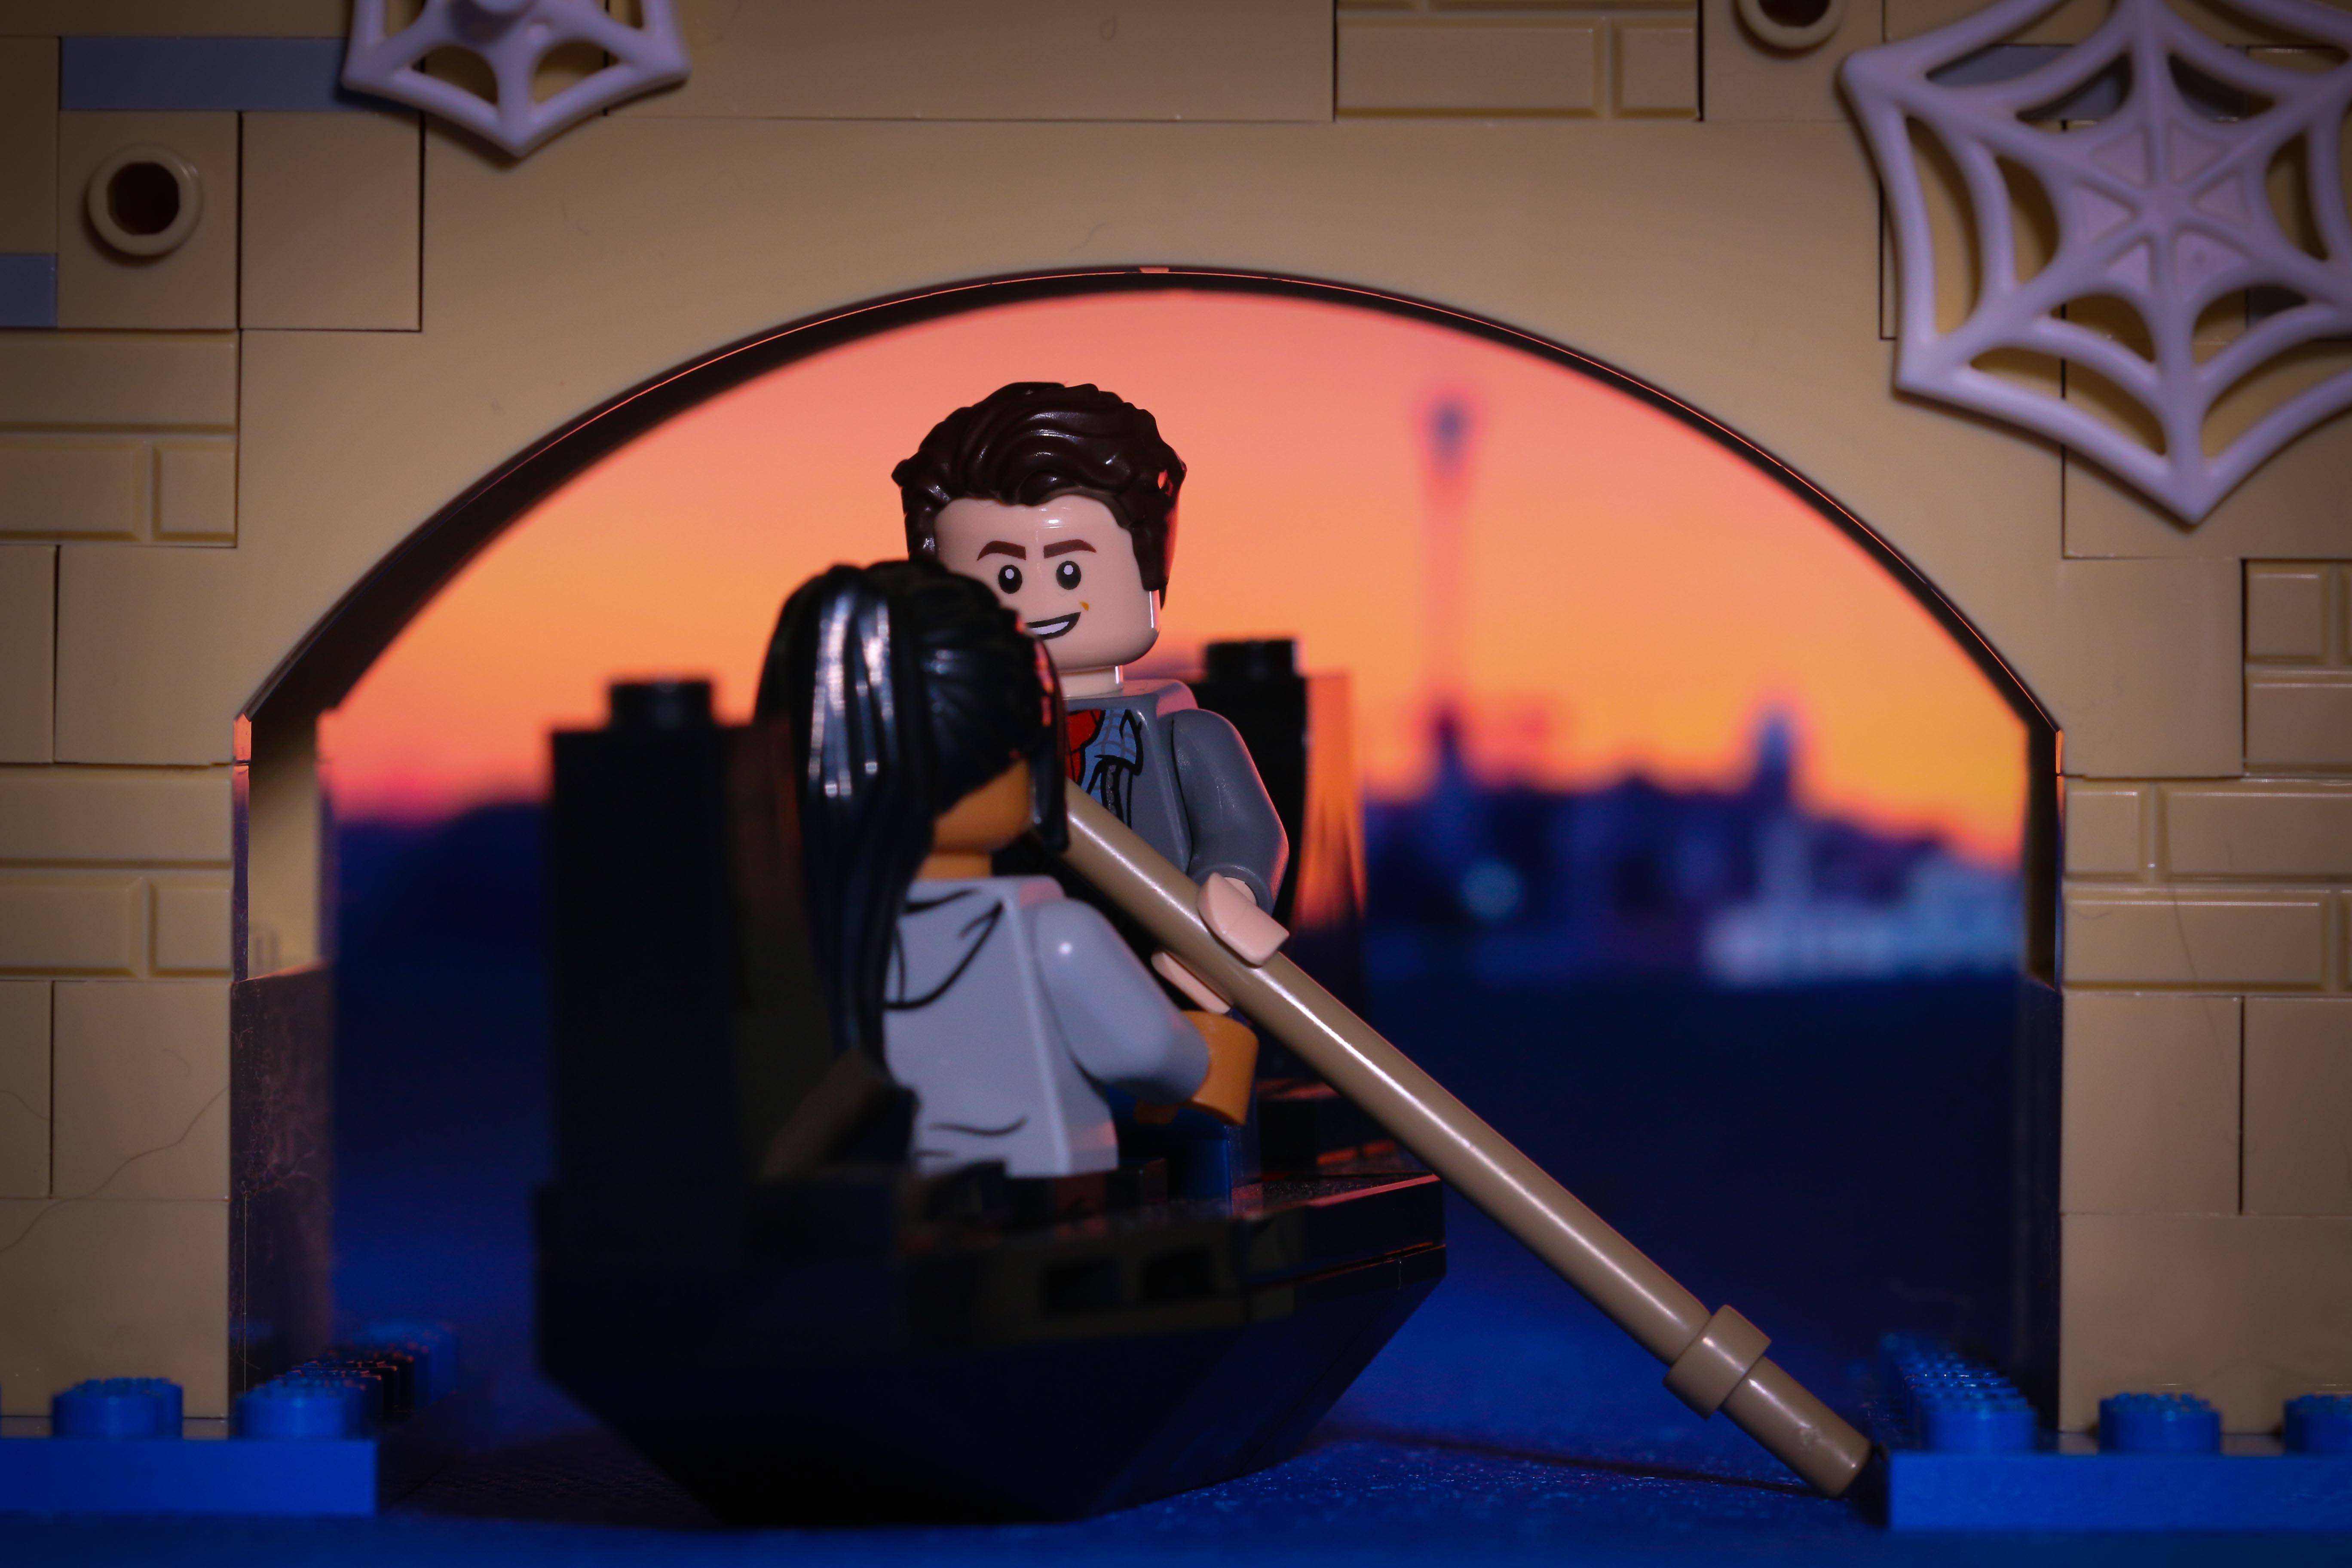 Lego-Peter-and-MK-Gondola